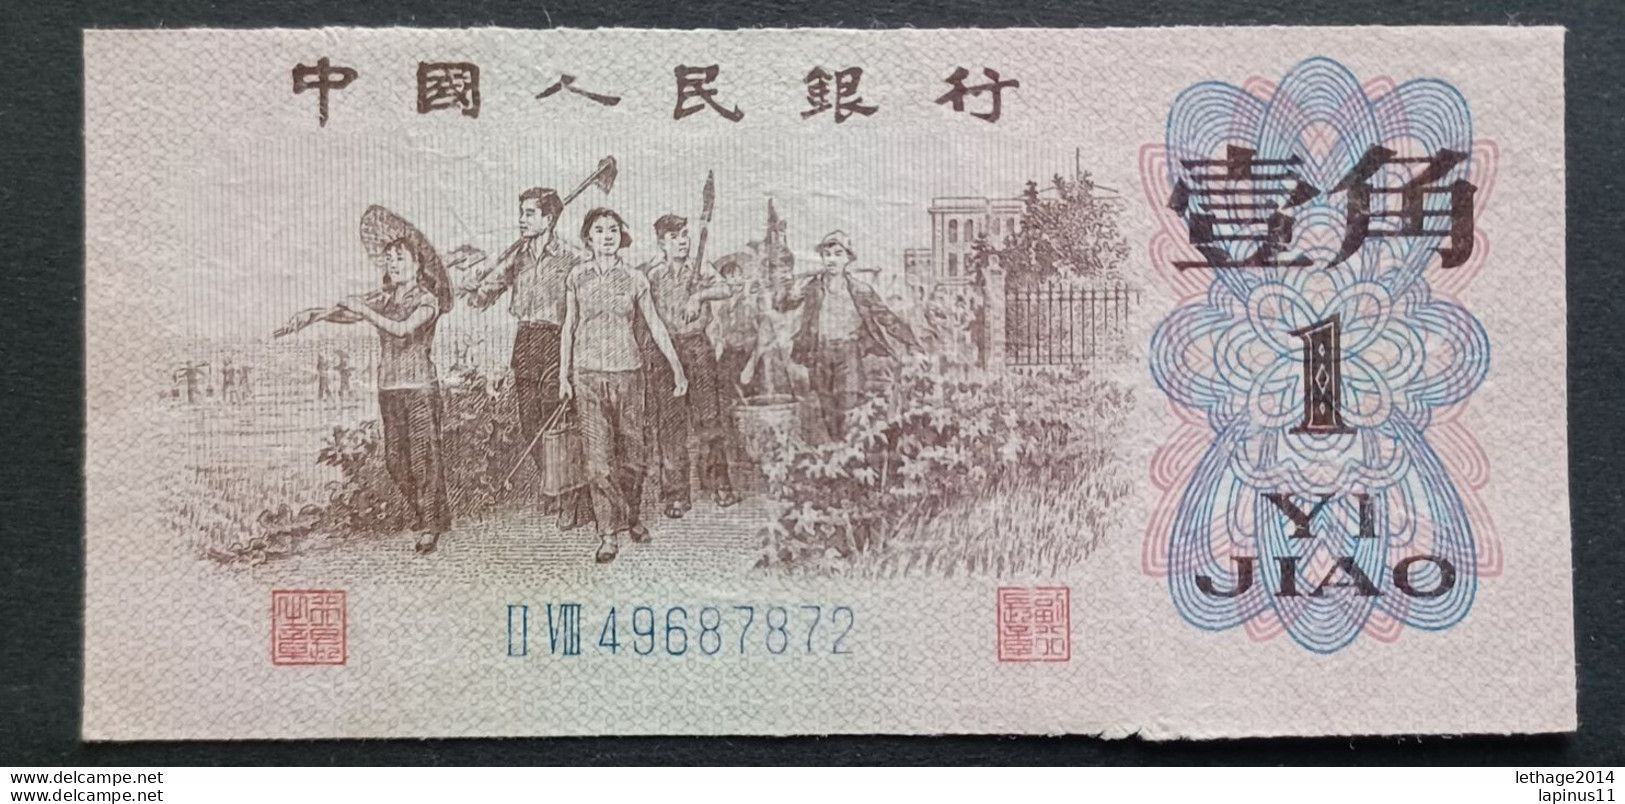 BANKNOTE CINA ZHONGGUO RENMI YINHANG 1 YI JIAO 1962 UNCIRCULATED - China